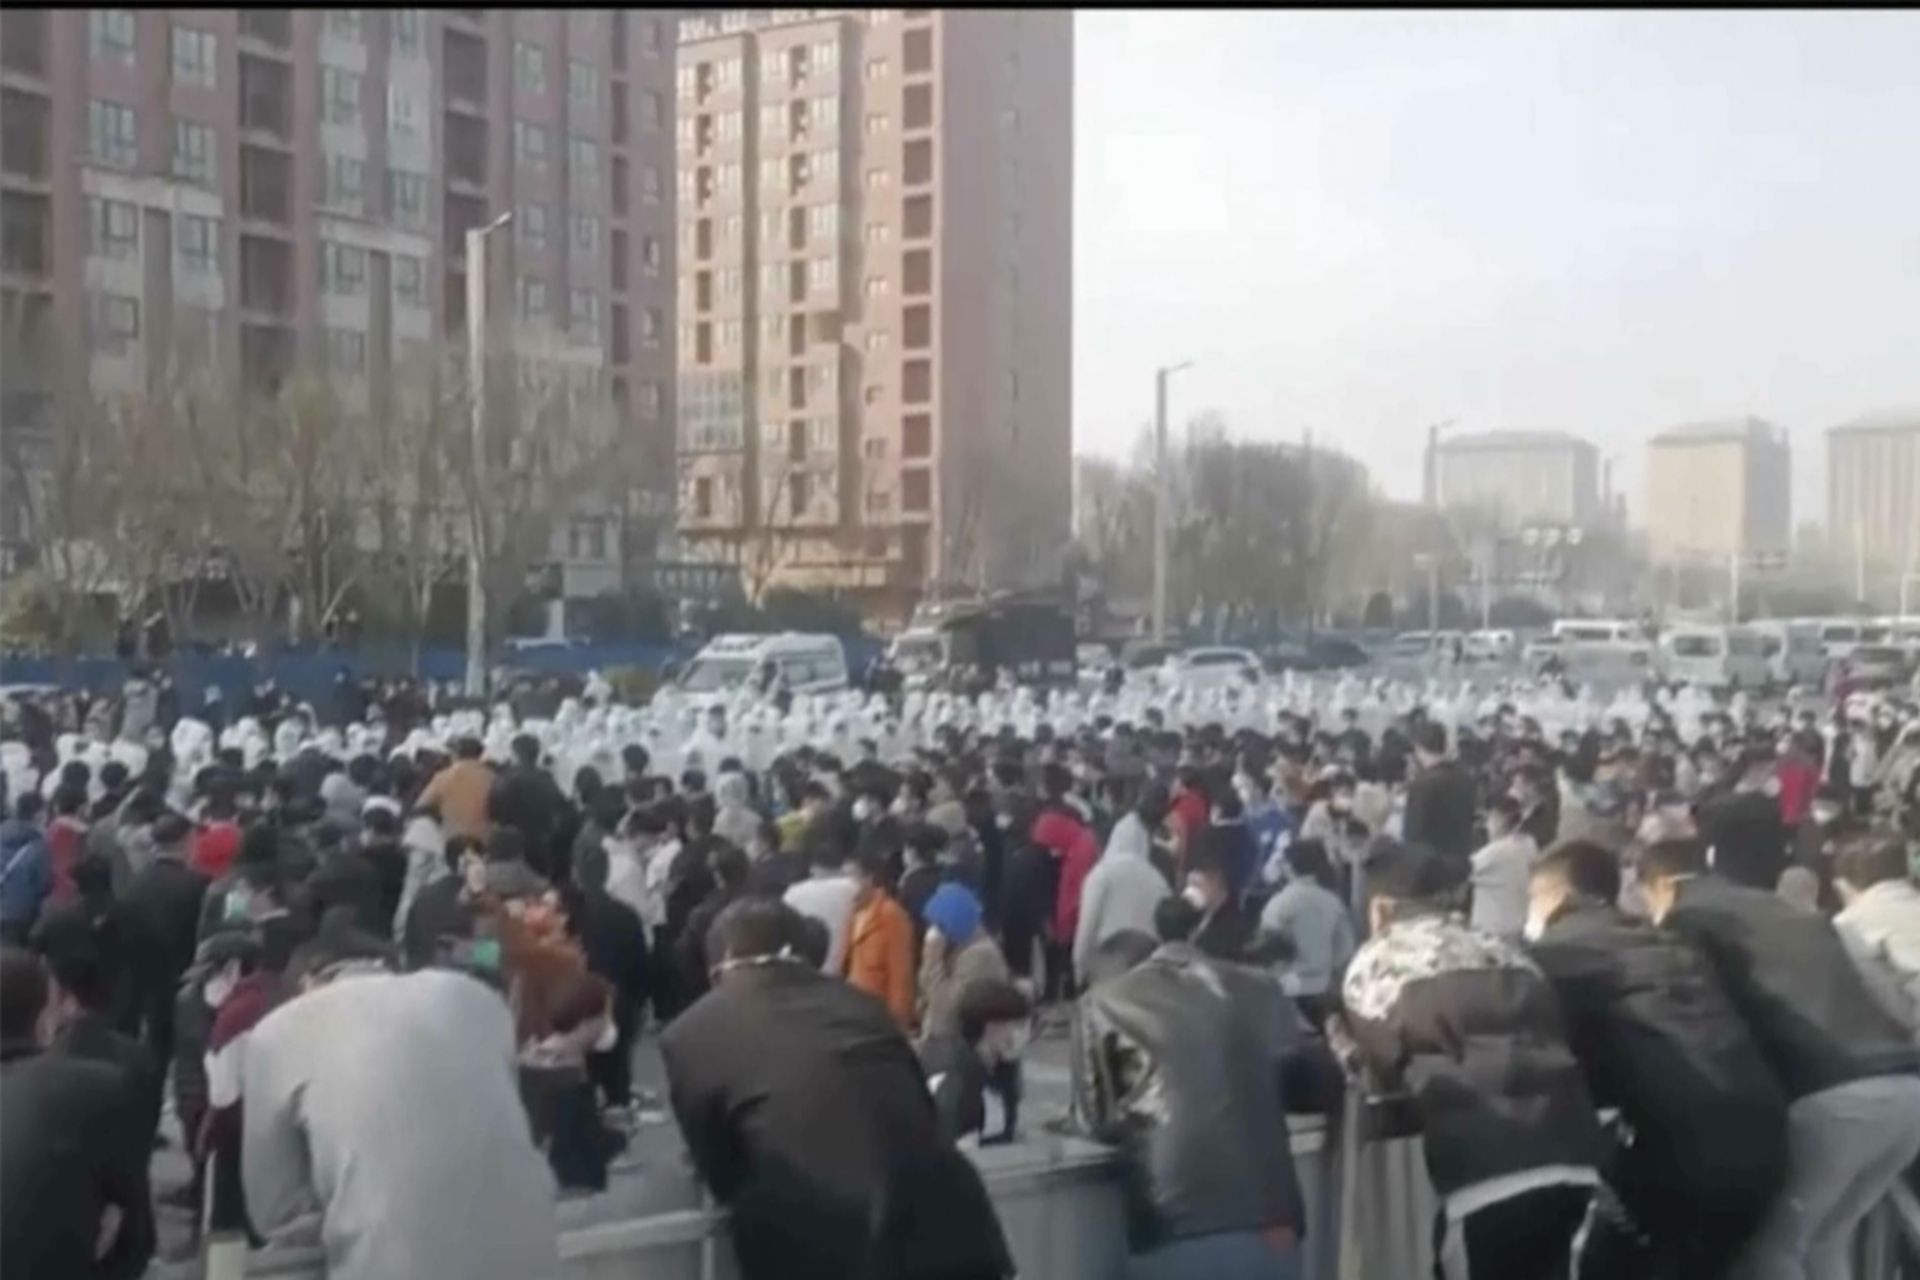 اعتراض کارگران کارخانه ژنگژو آیفون سیتی چین / جمعیت مردم در حال اعتراض